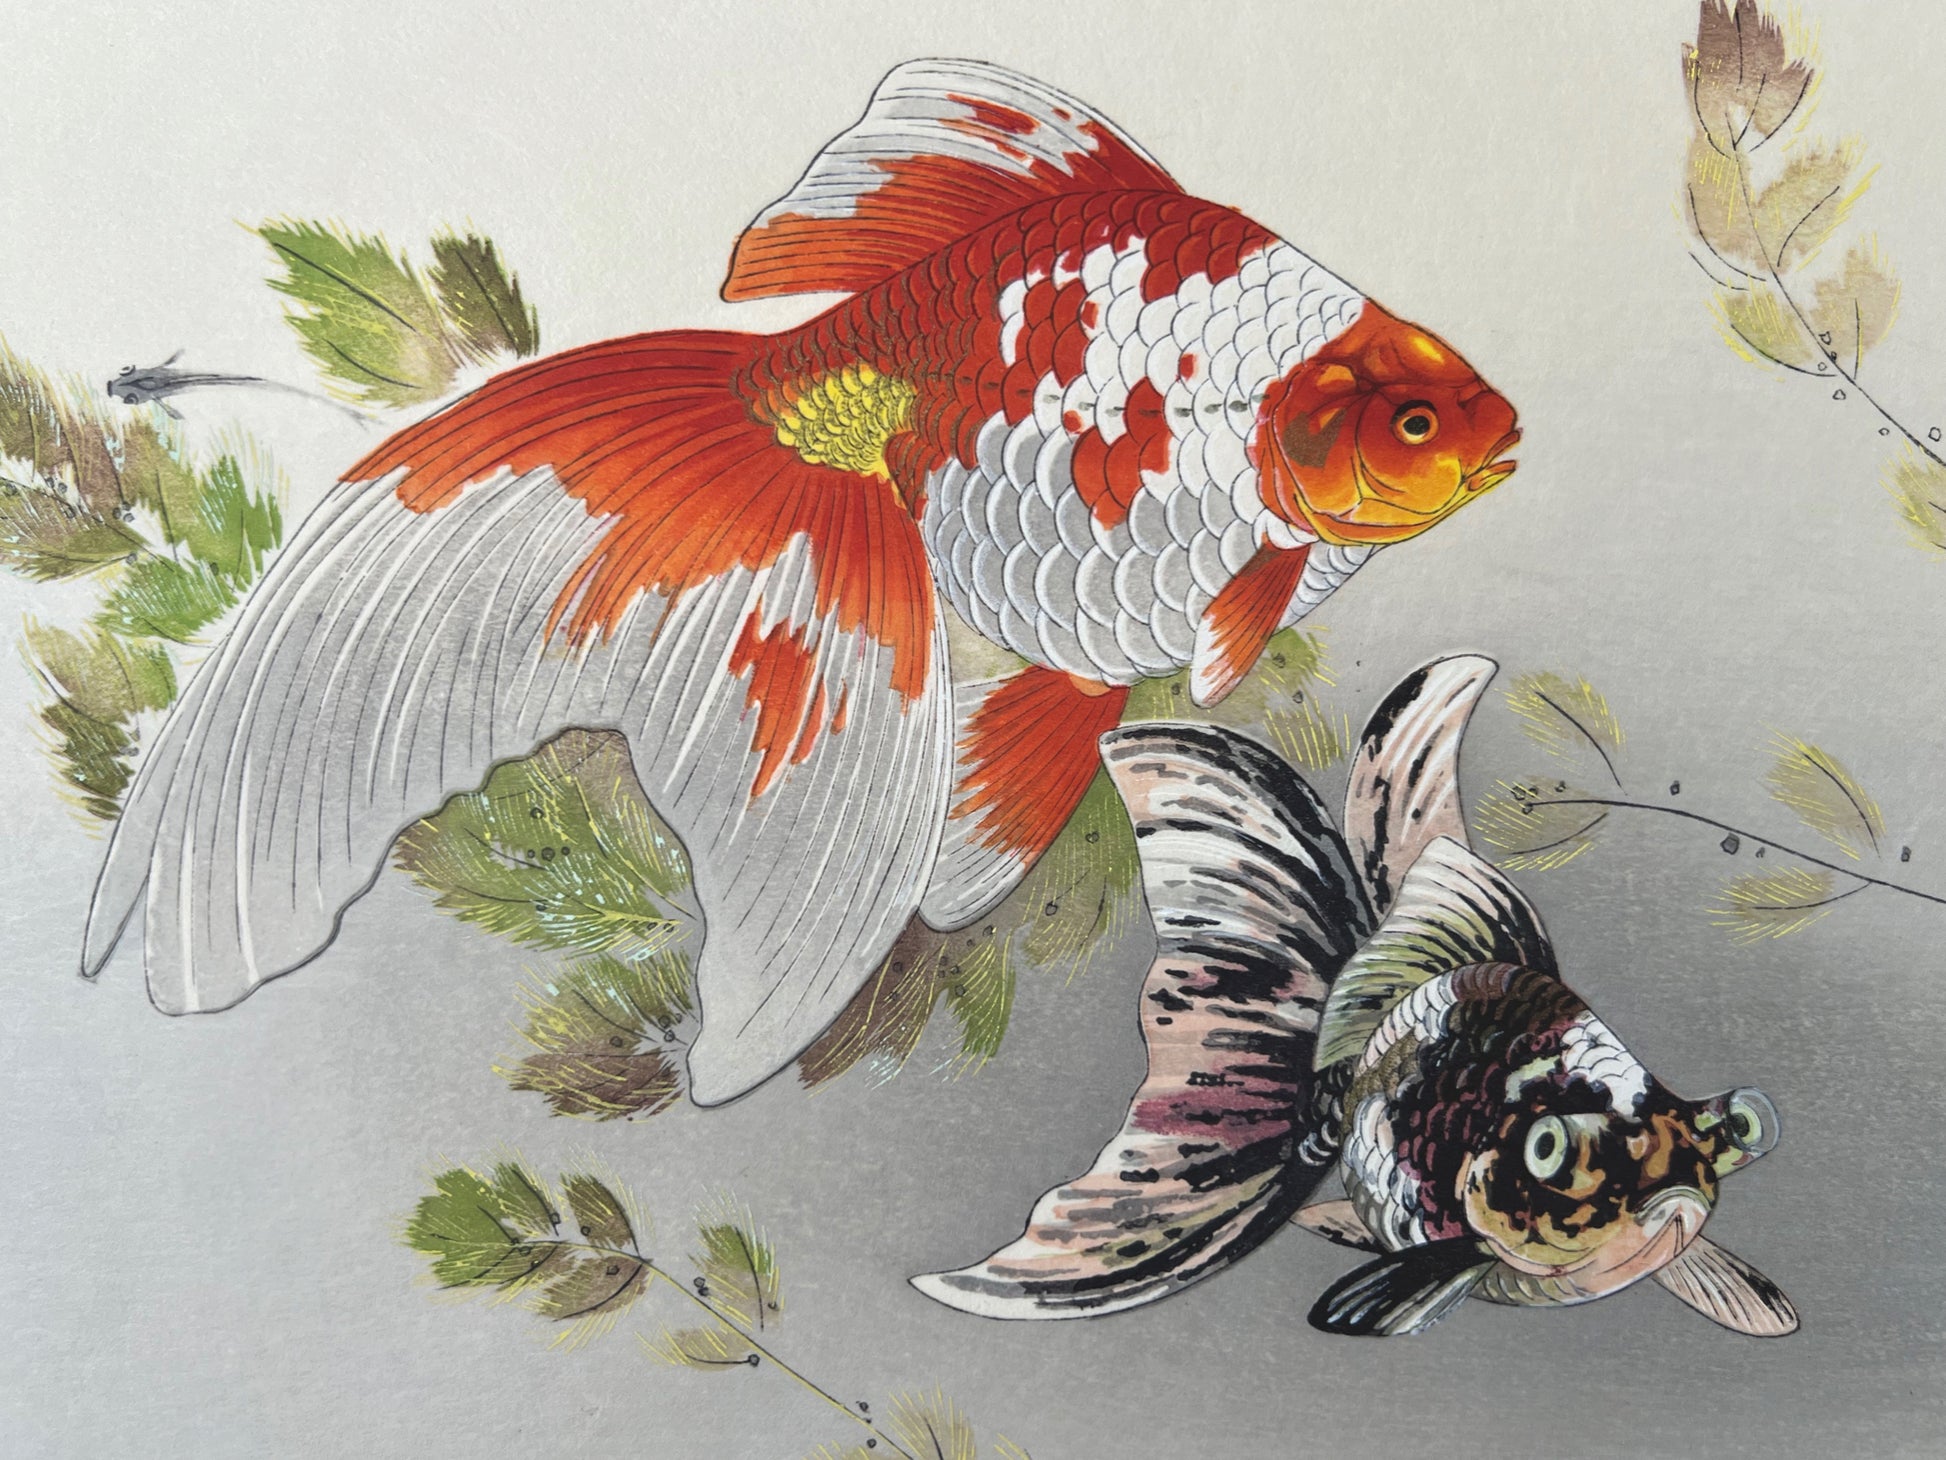 Les incroyables portraits de poissons rouges chinois par le